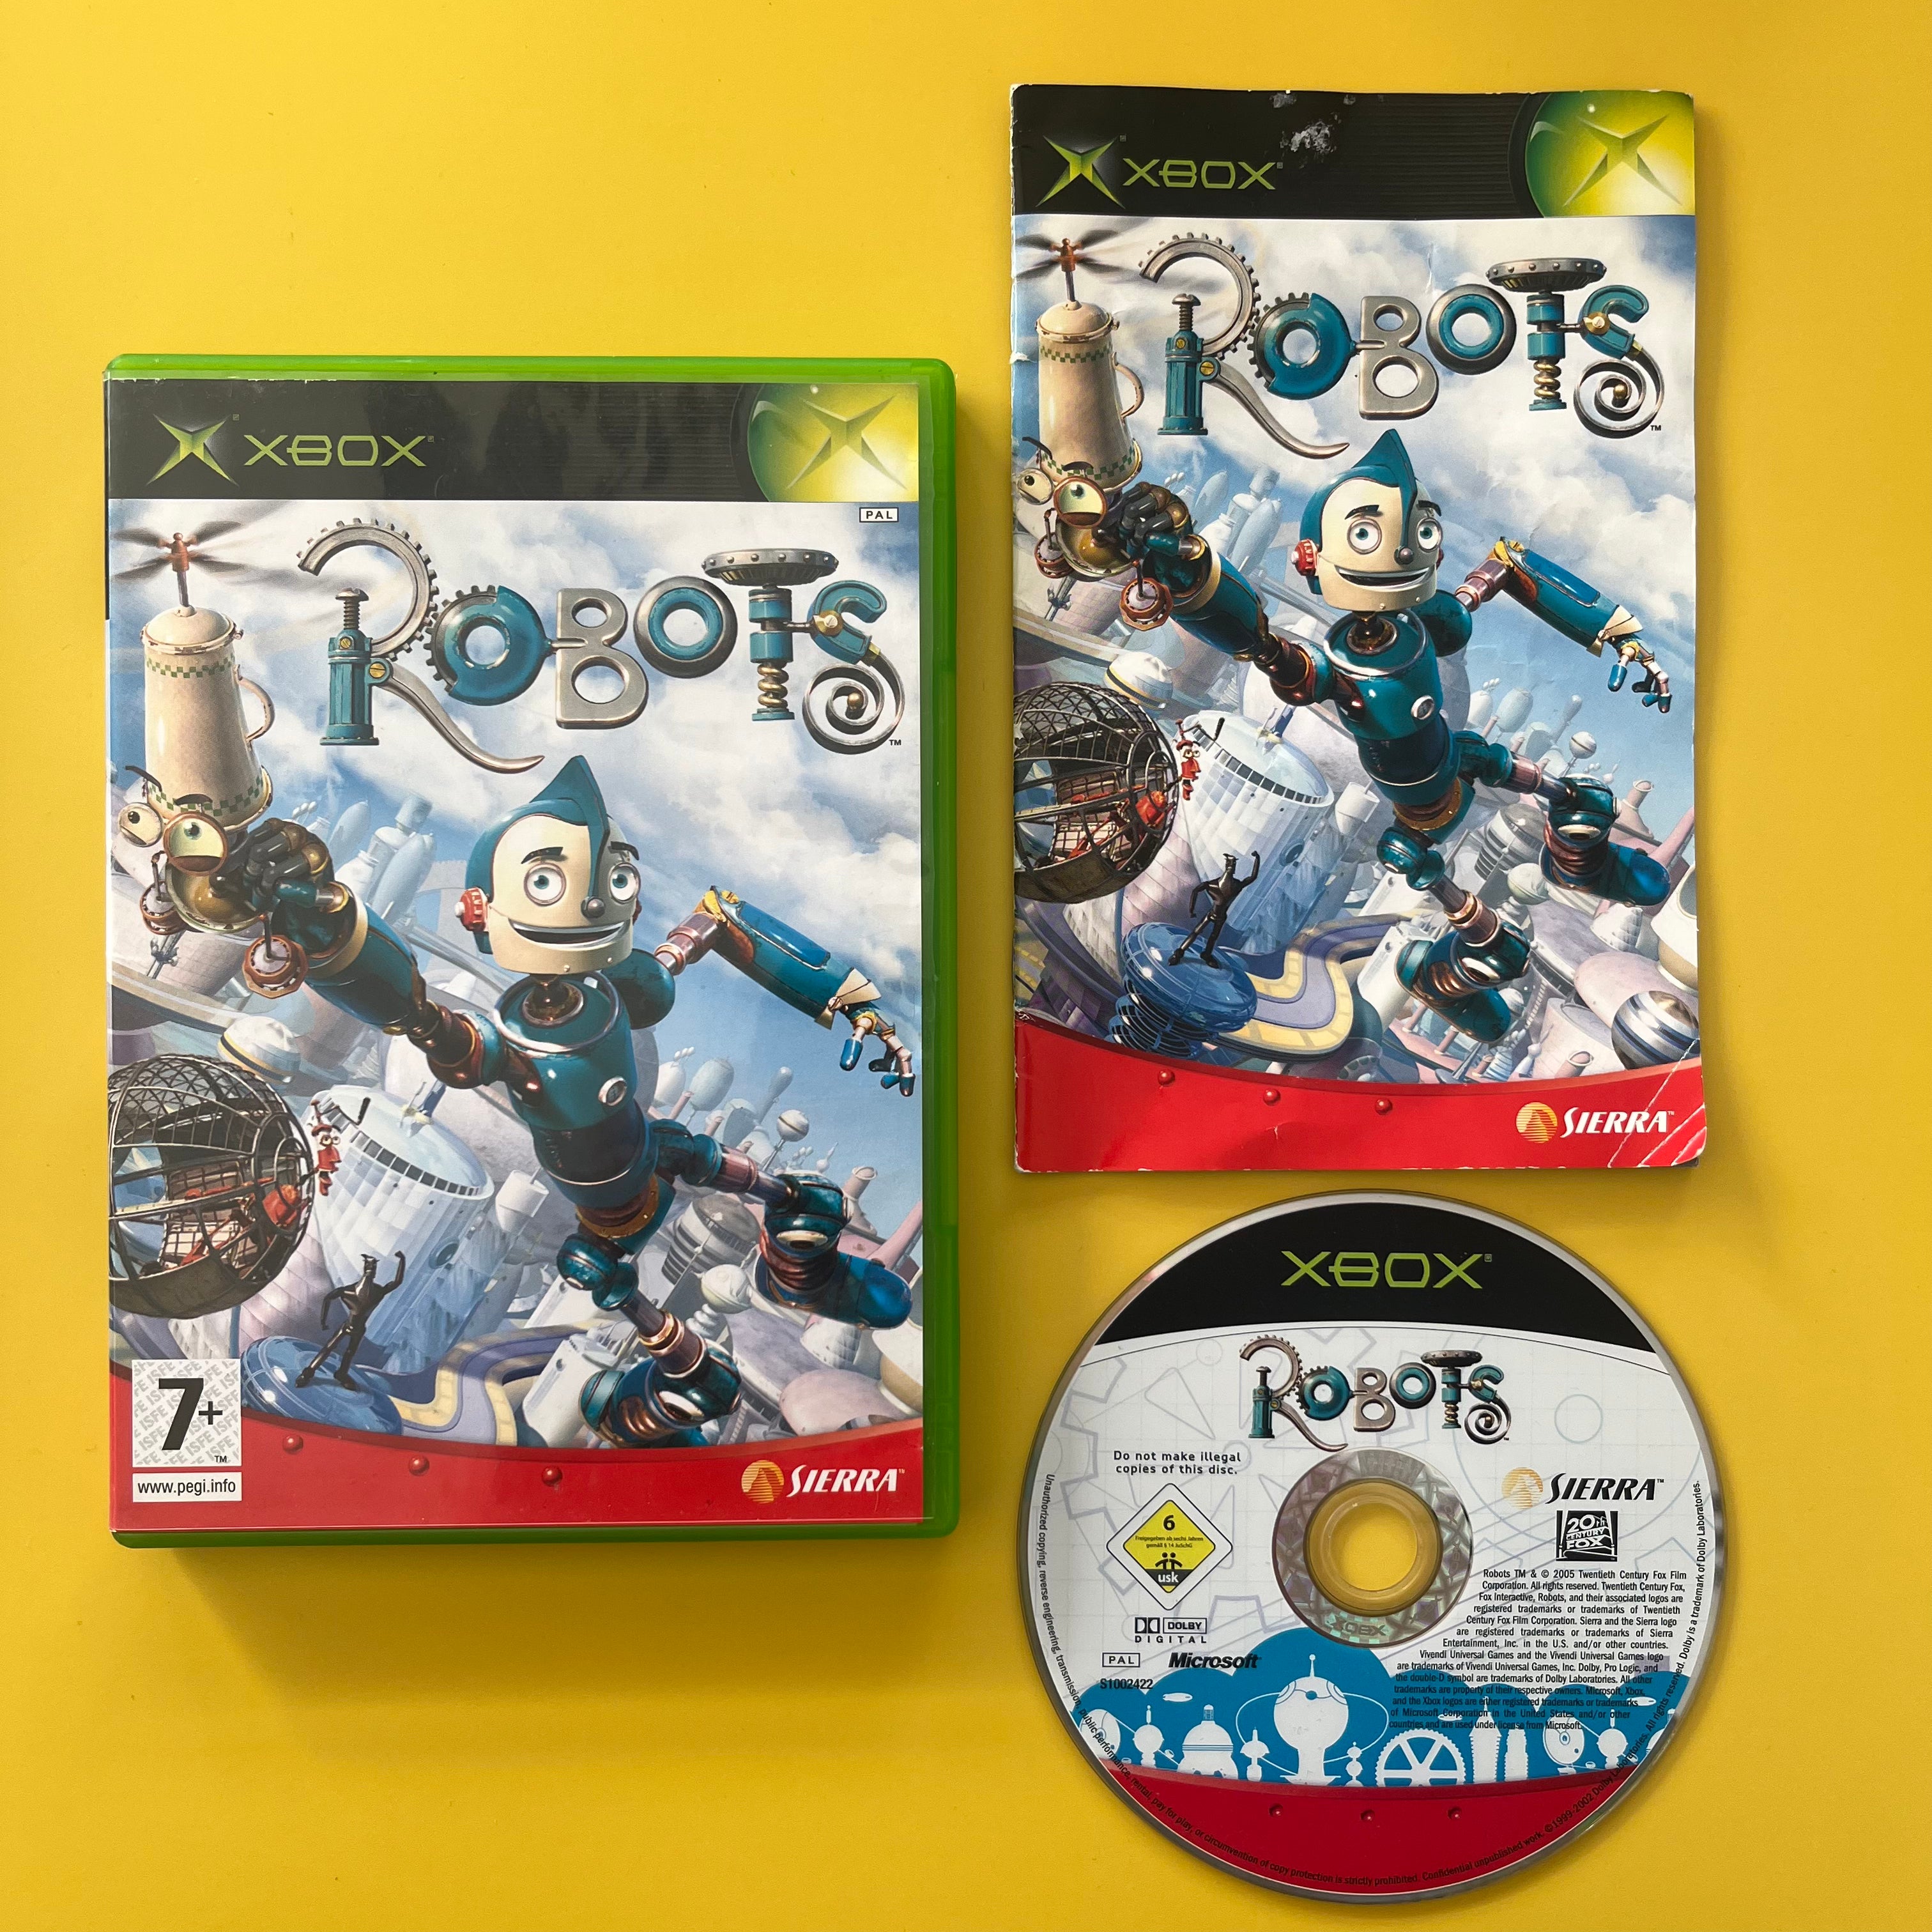 Xbox - Robots